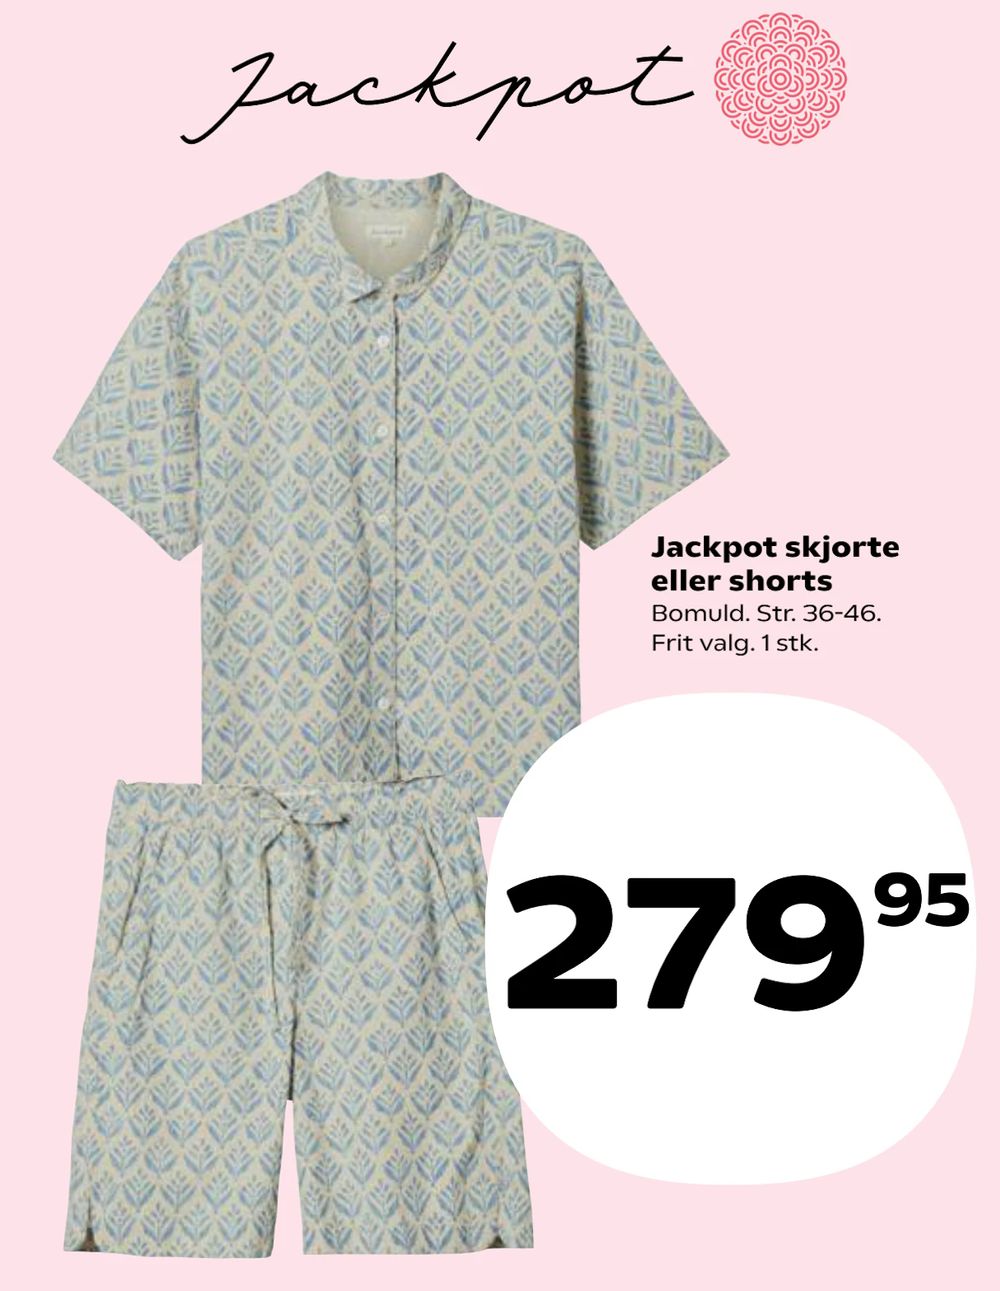 Tilbud på Jackpot skjorte eller shorts fra Kvickly til 279,95 kr.